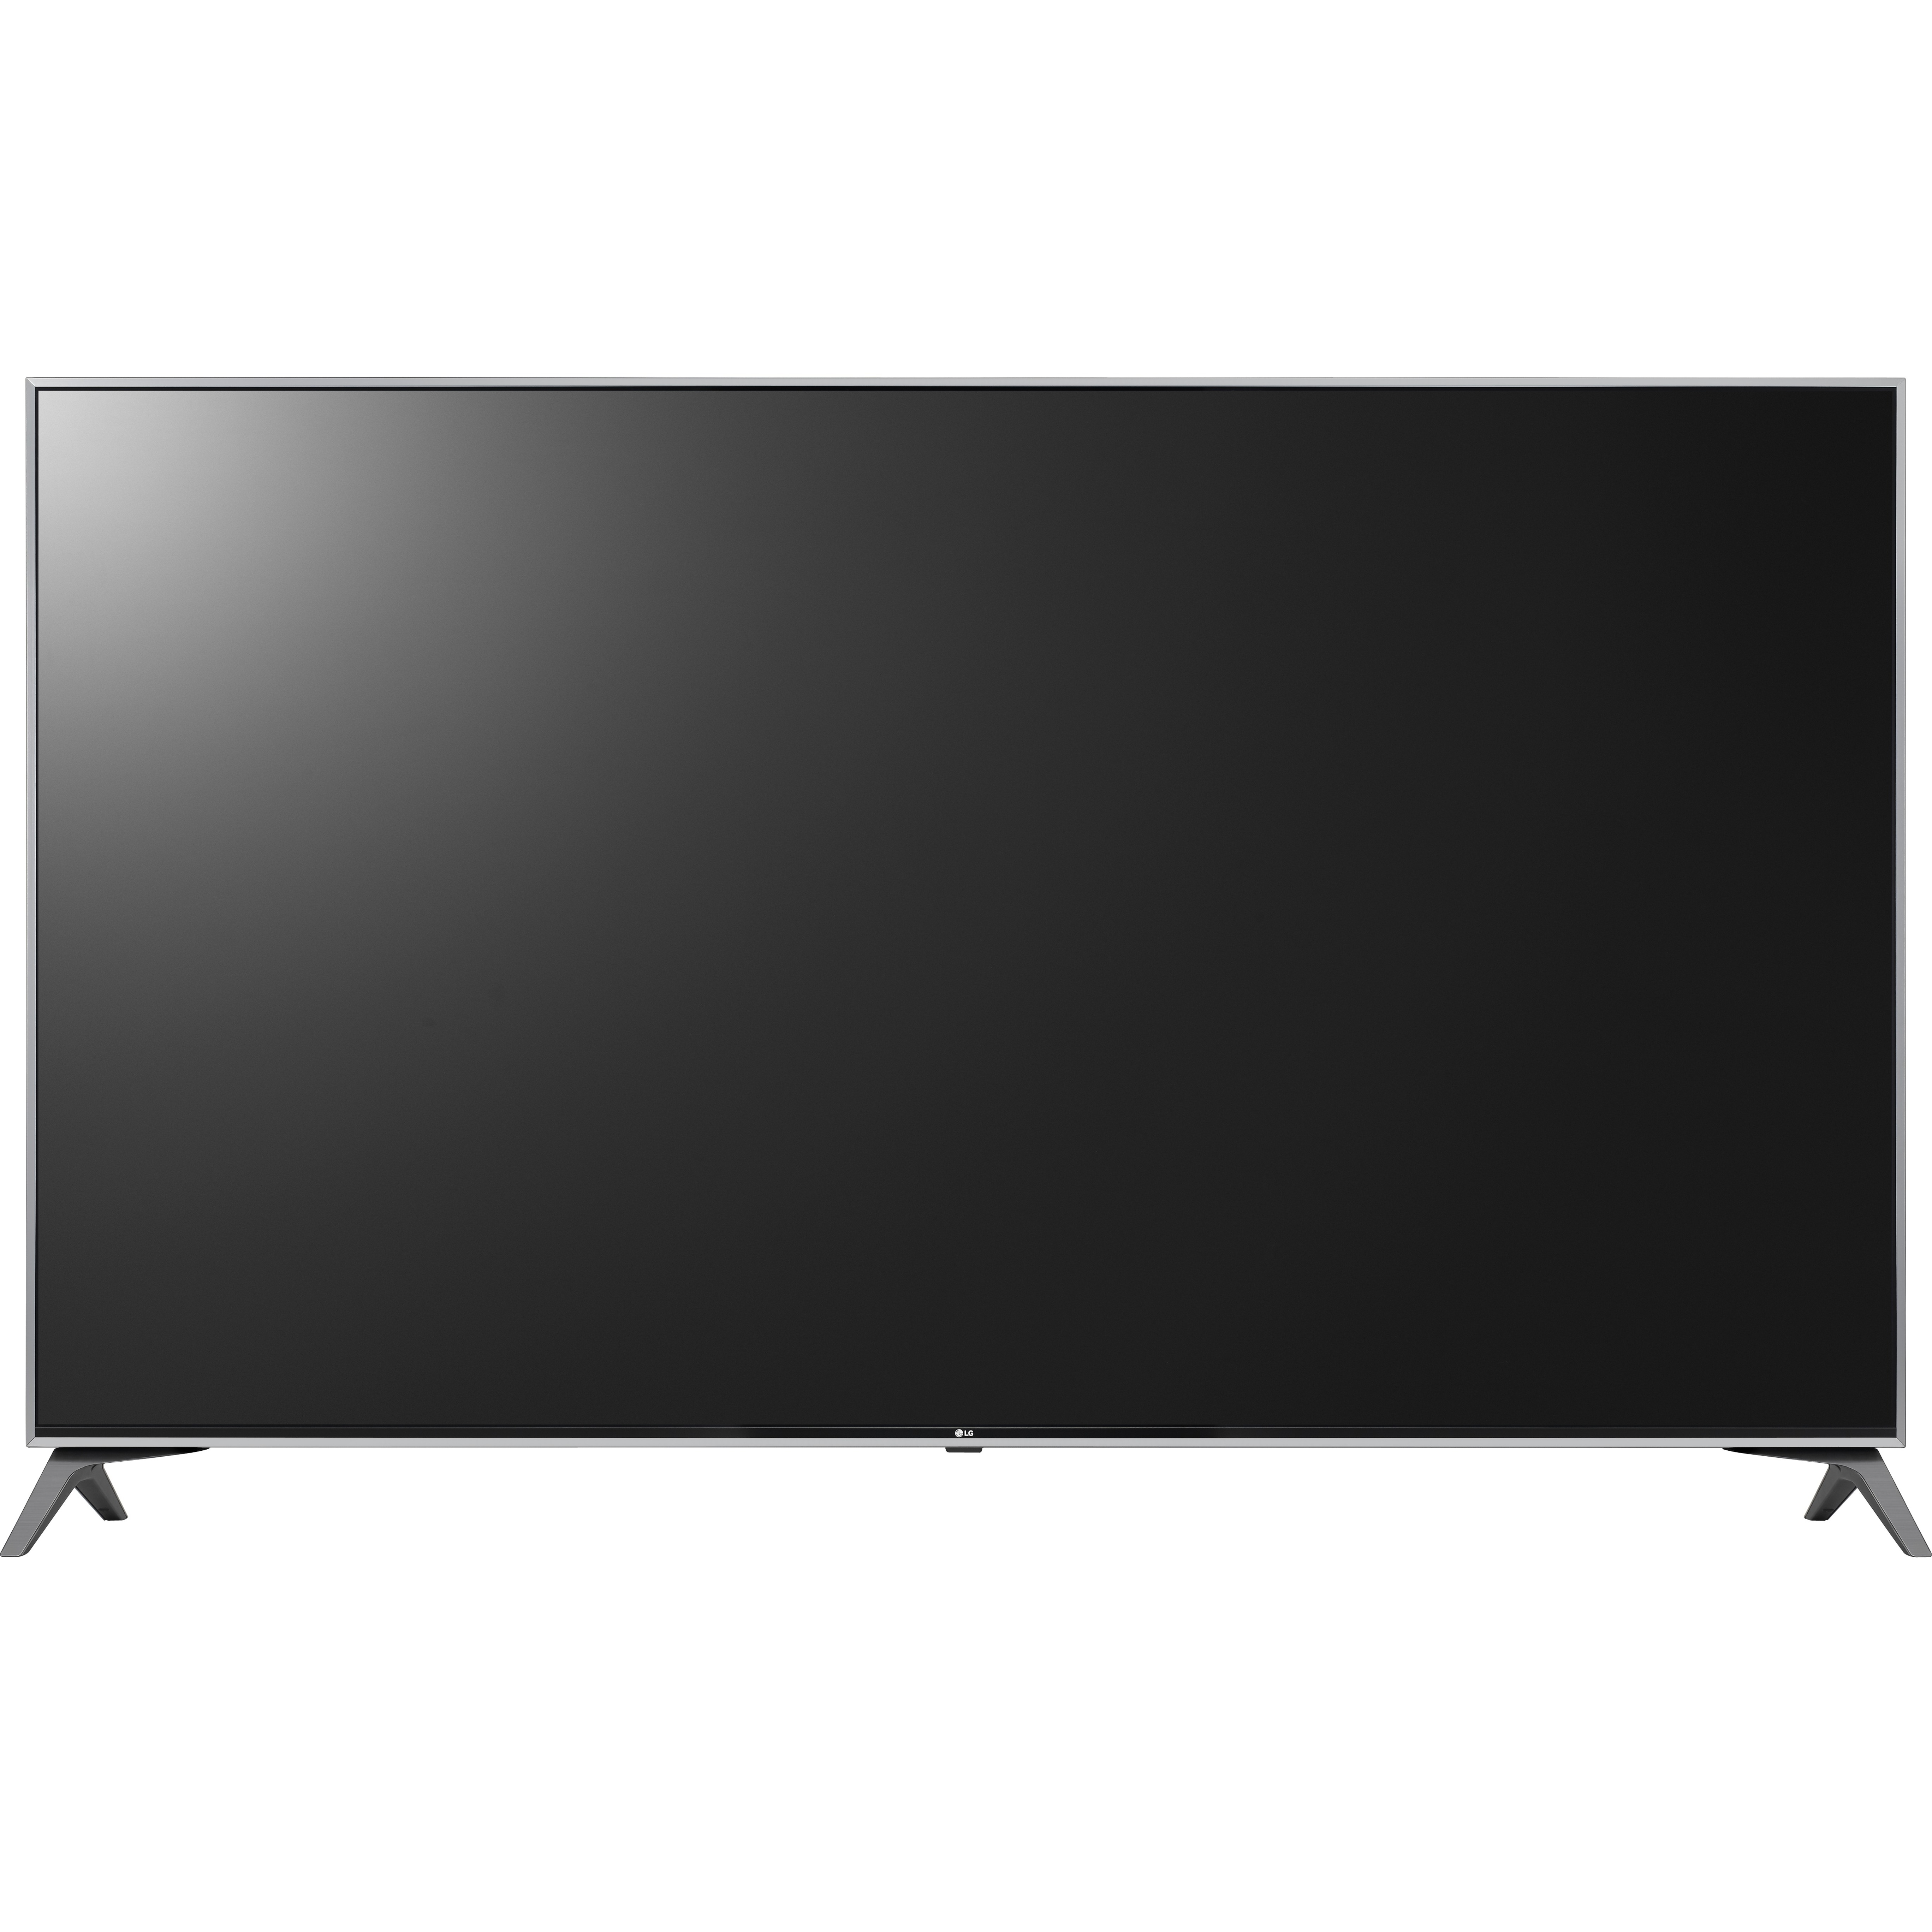 LG 65" Class 4K UHDTV (2160p) Smart LED-LCD TV (65UJ7700) - image 1 of 8